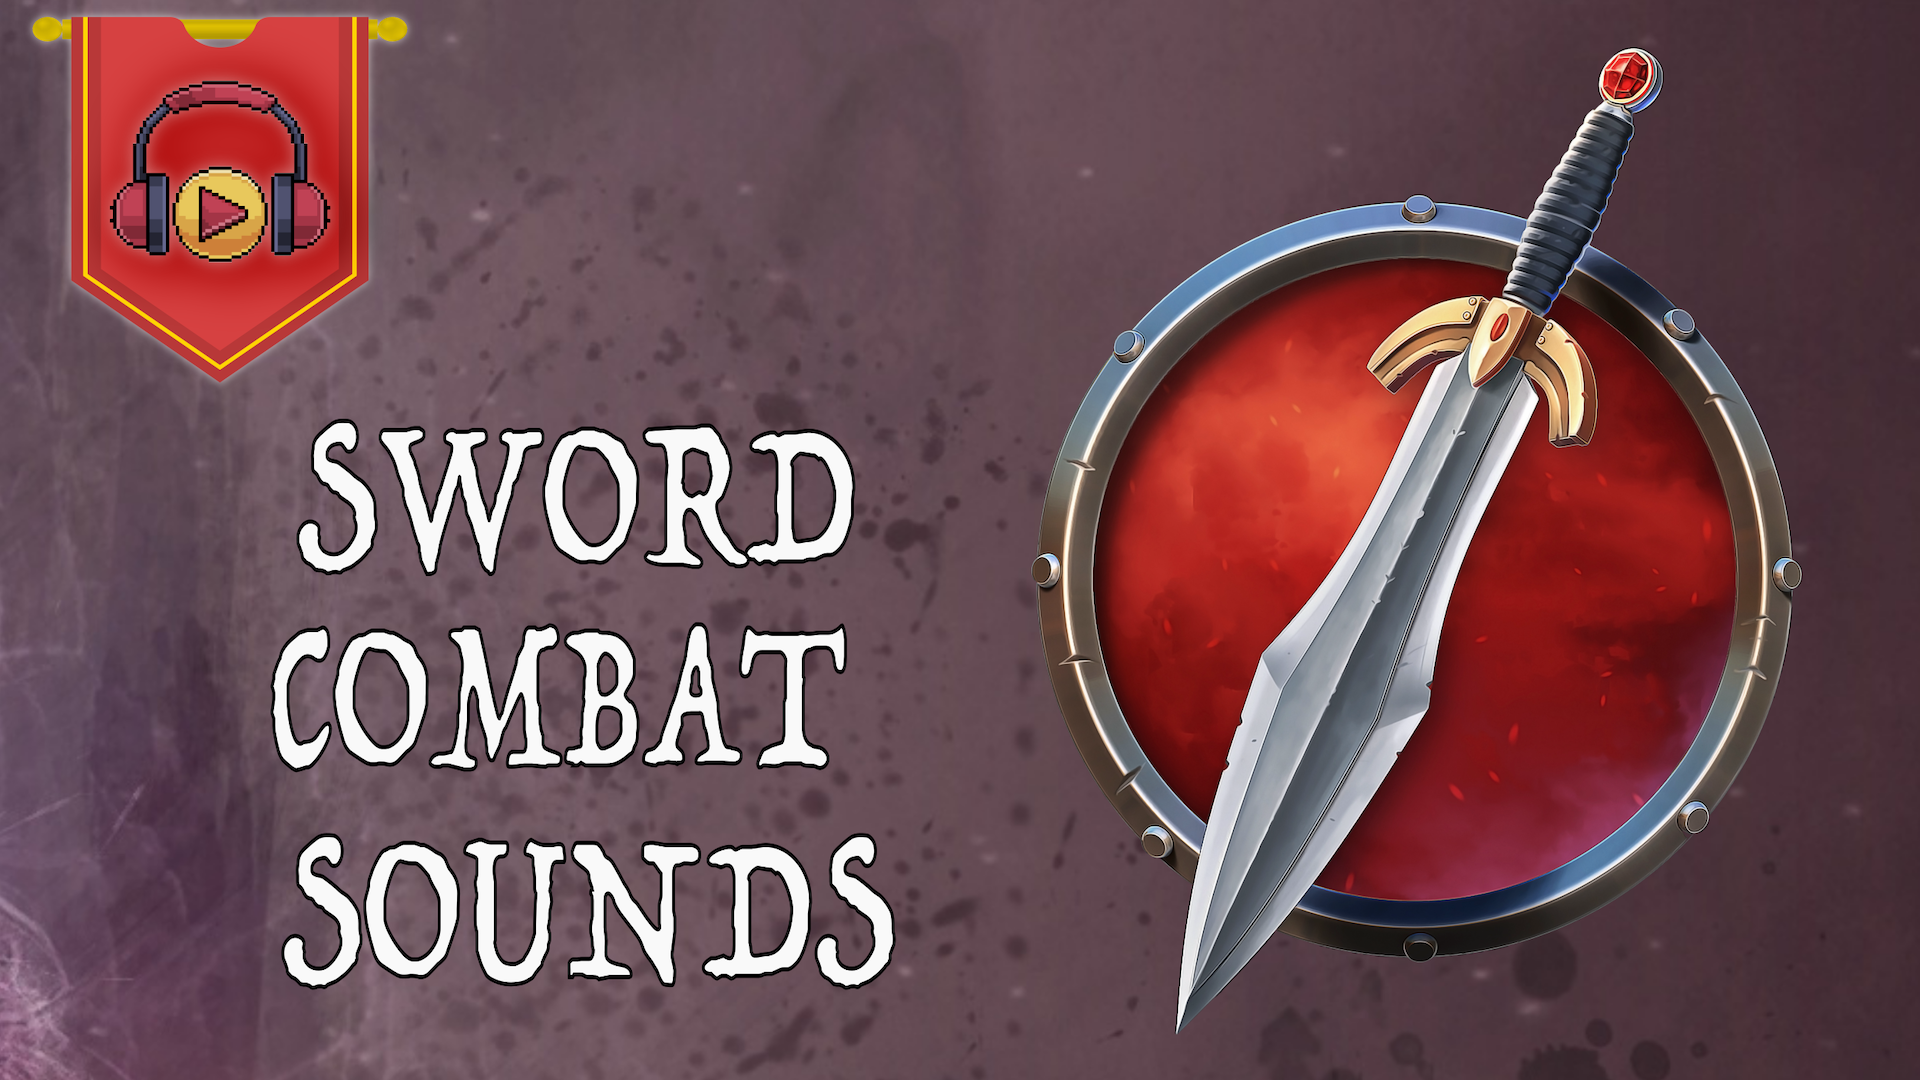 Sword Combat Sounds (Weapons)